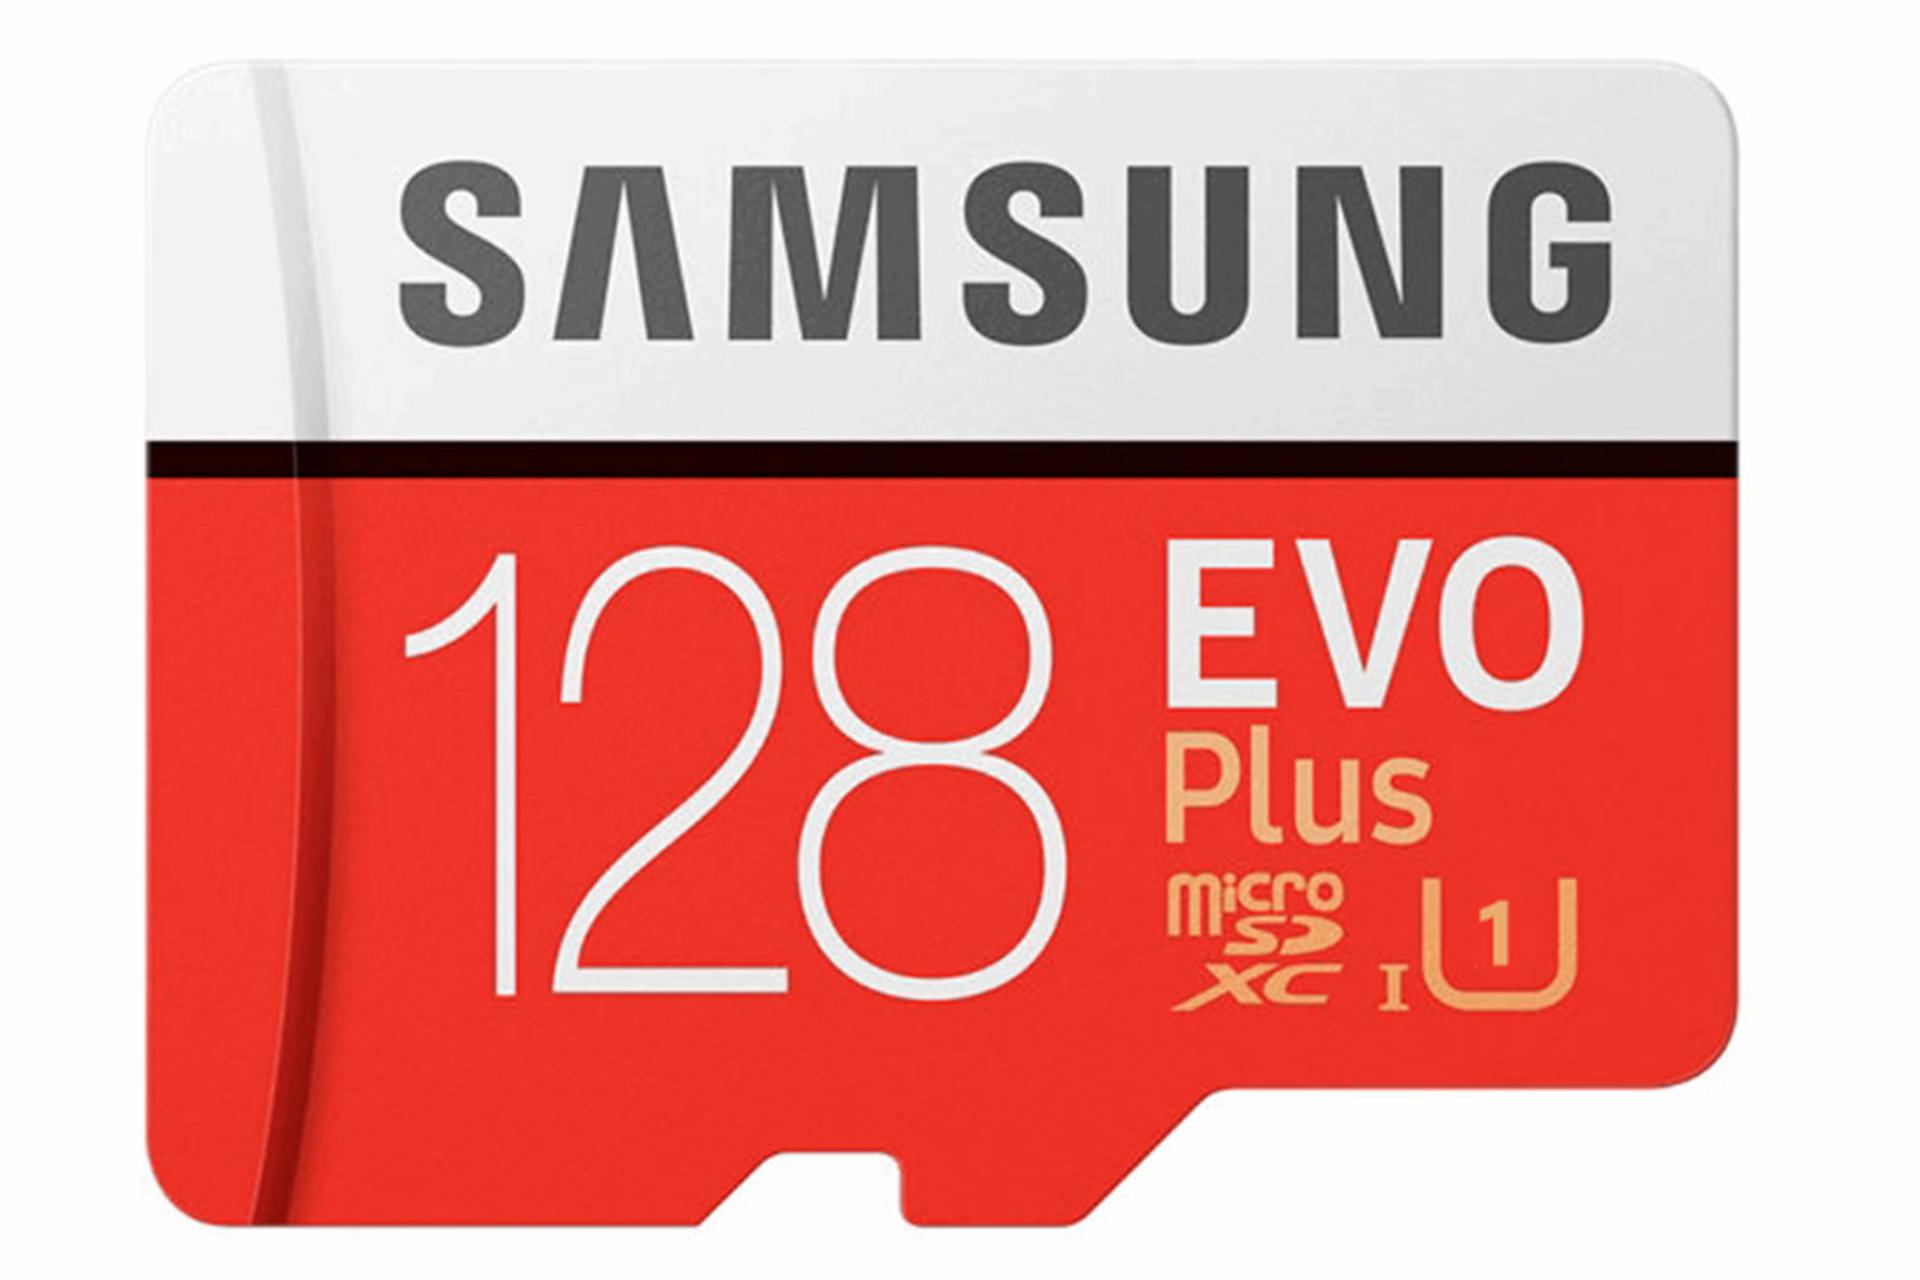 مرجع متخصصين ايران Samsung Evo Plus microSDXC Class 10 UHS-I U1 128GB